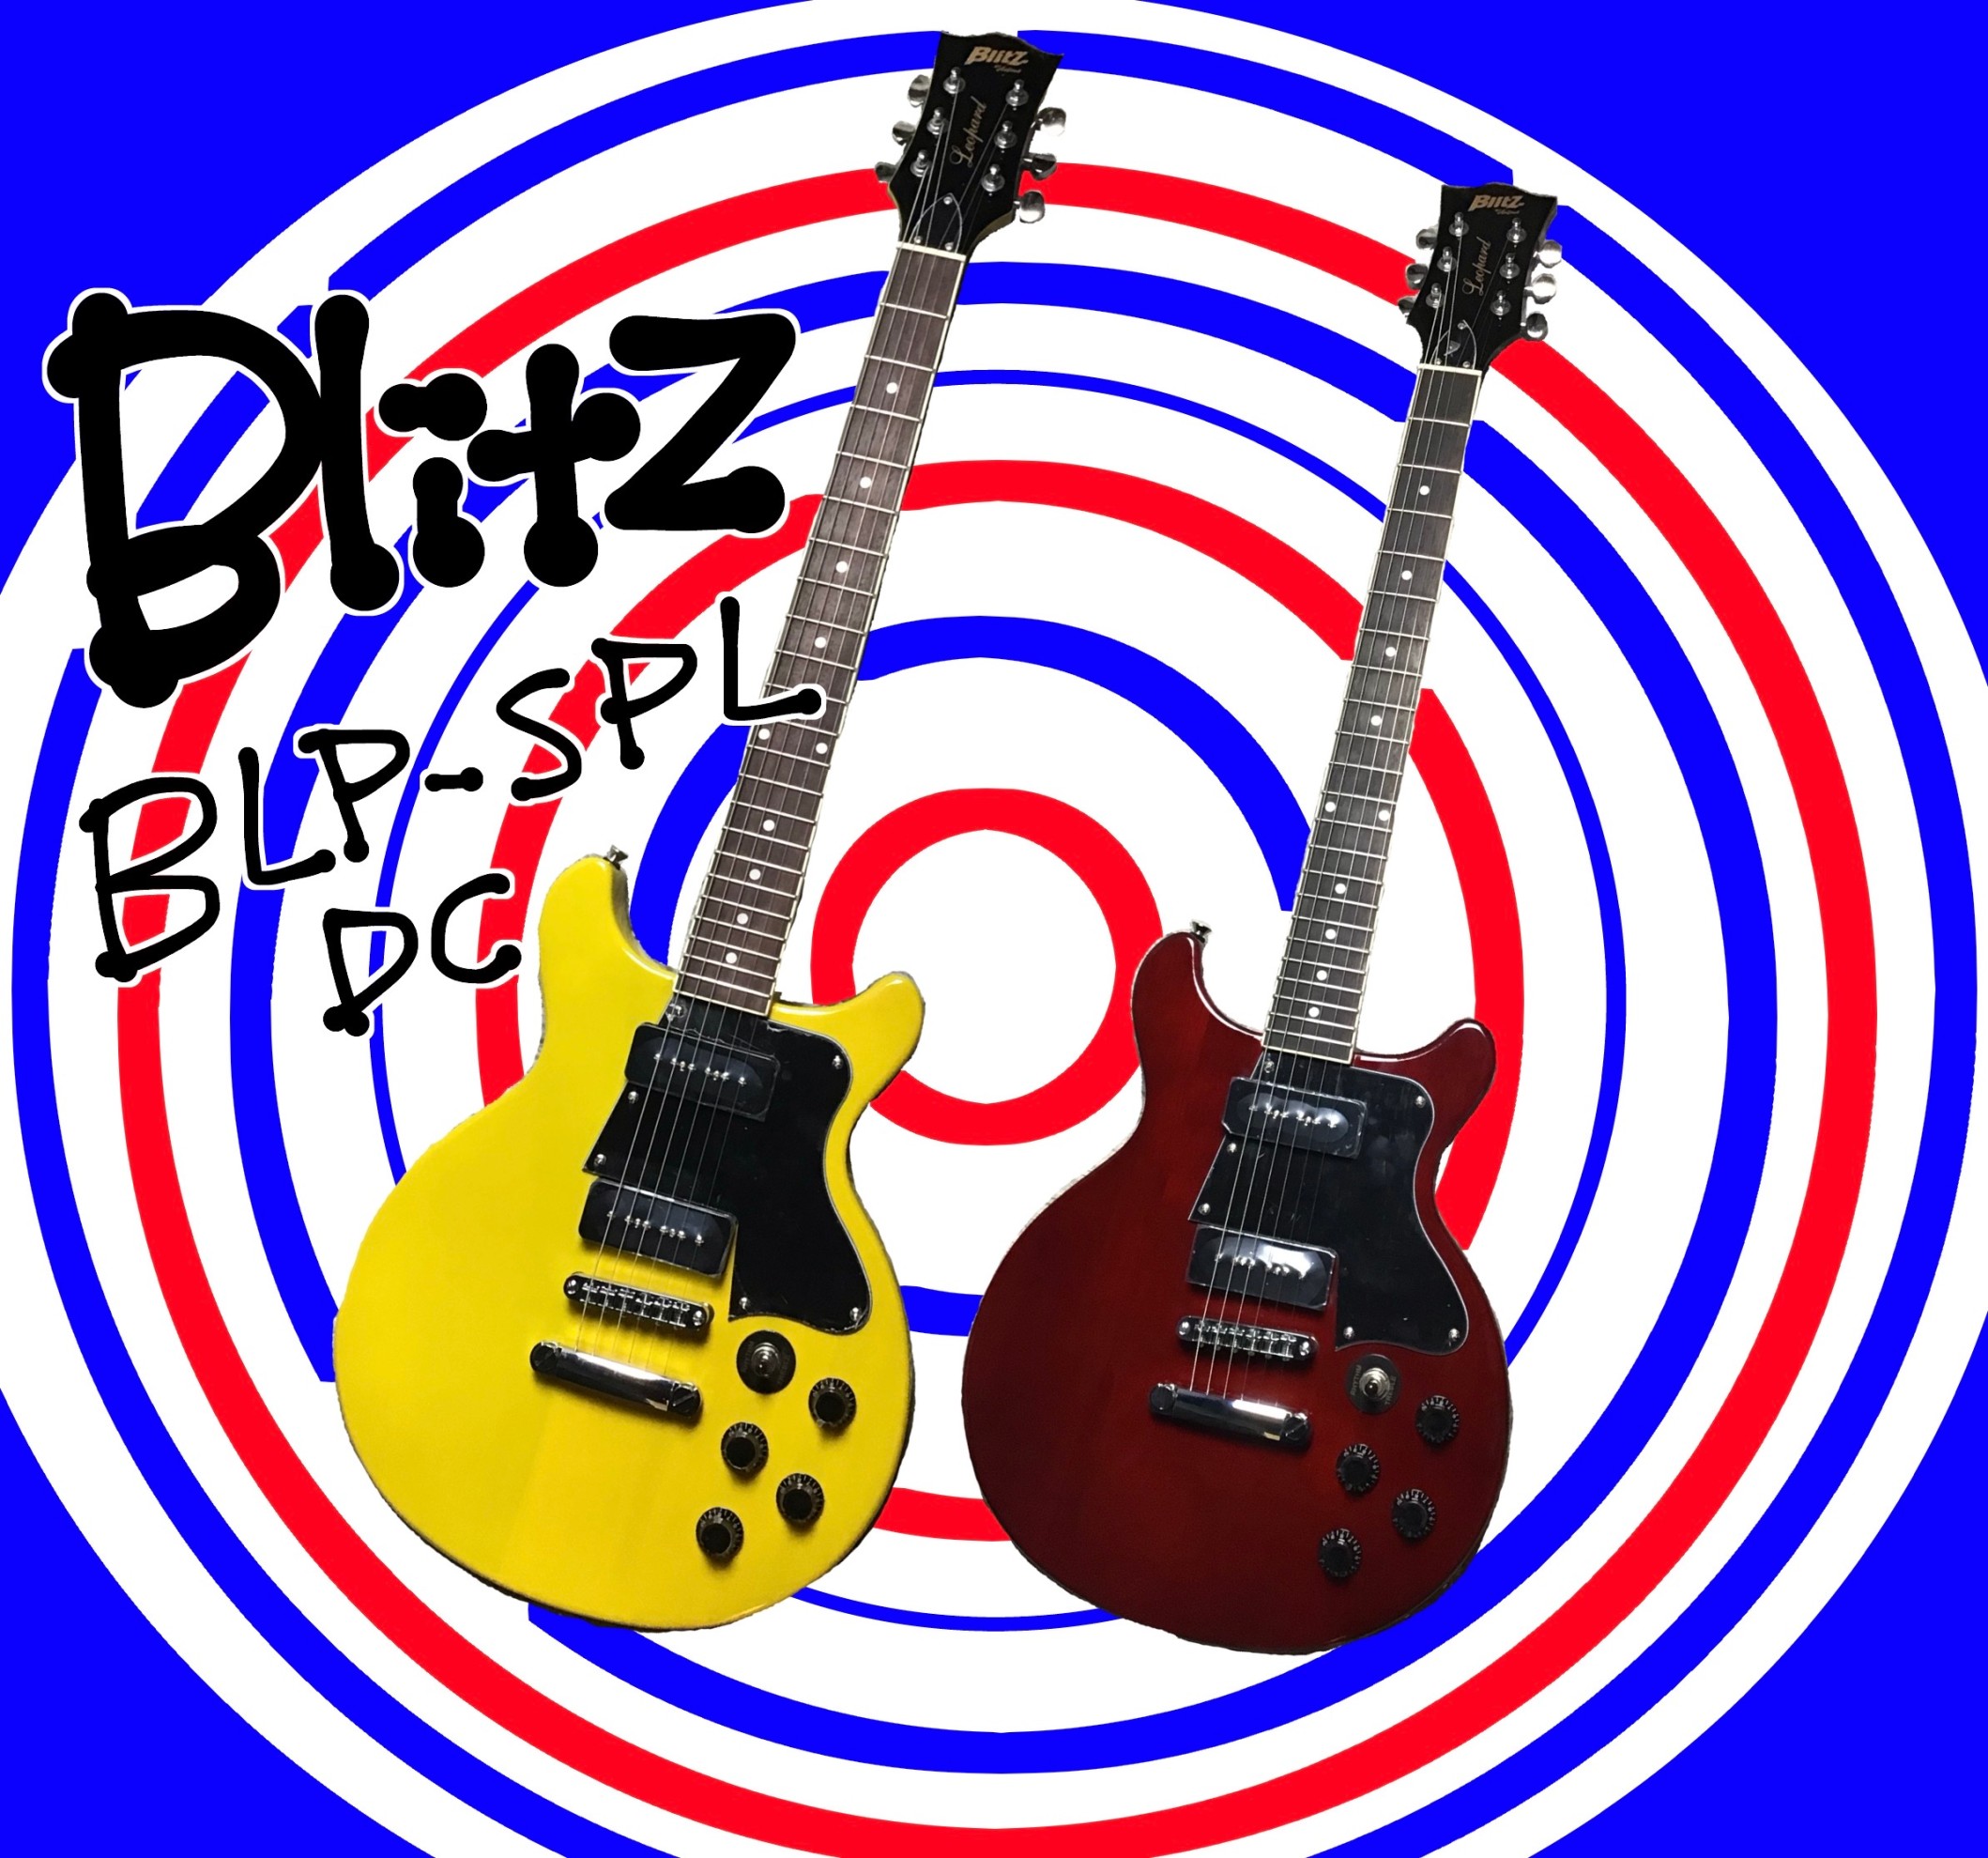 Blitz(ブリッツ)BLP-SPL/DC